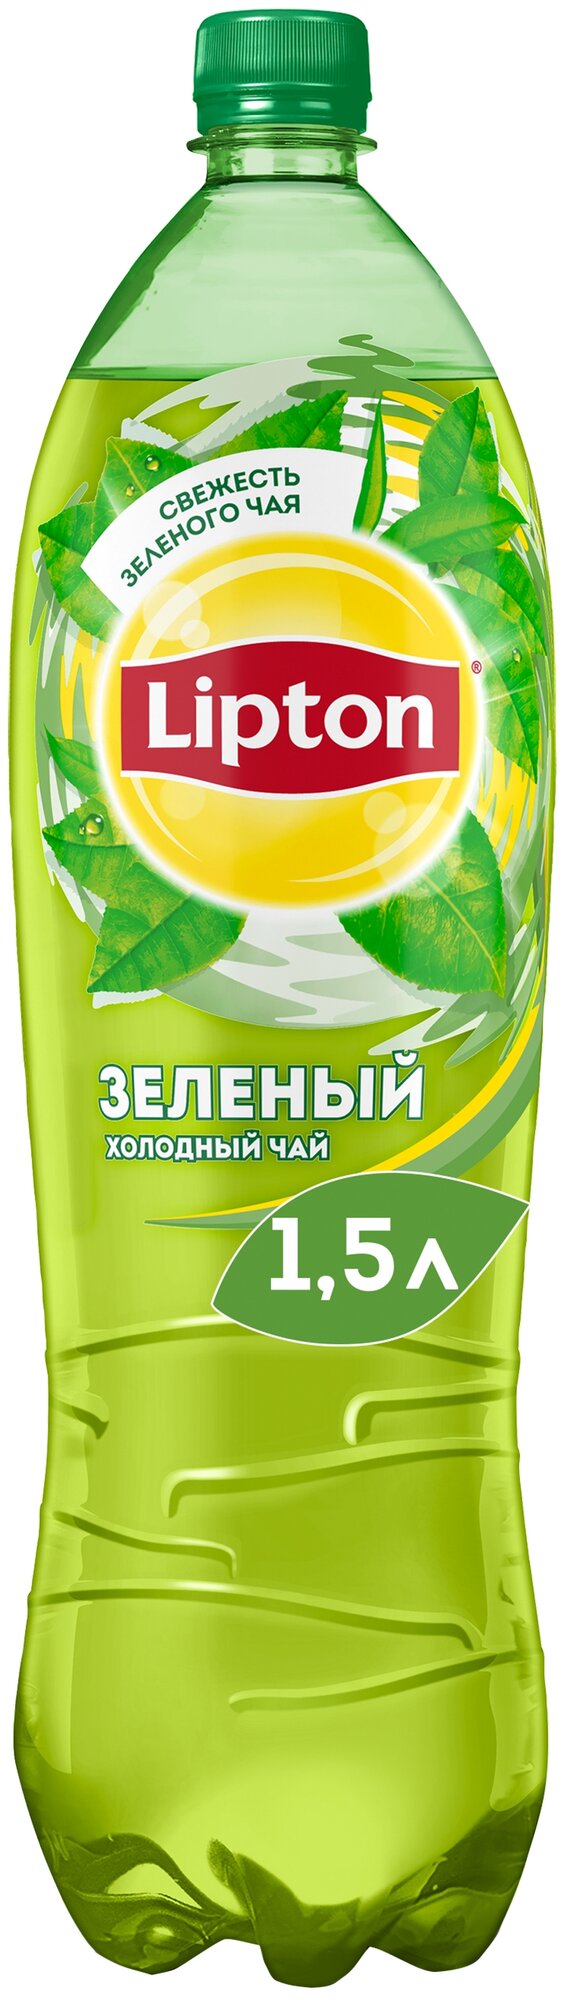 Чай холодный Lipton зеленый 1,5 л